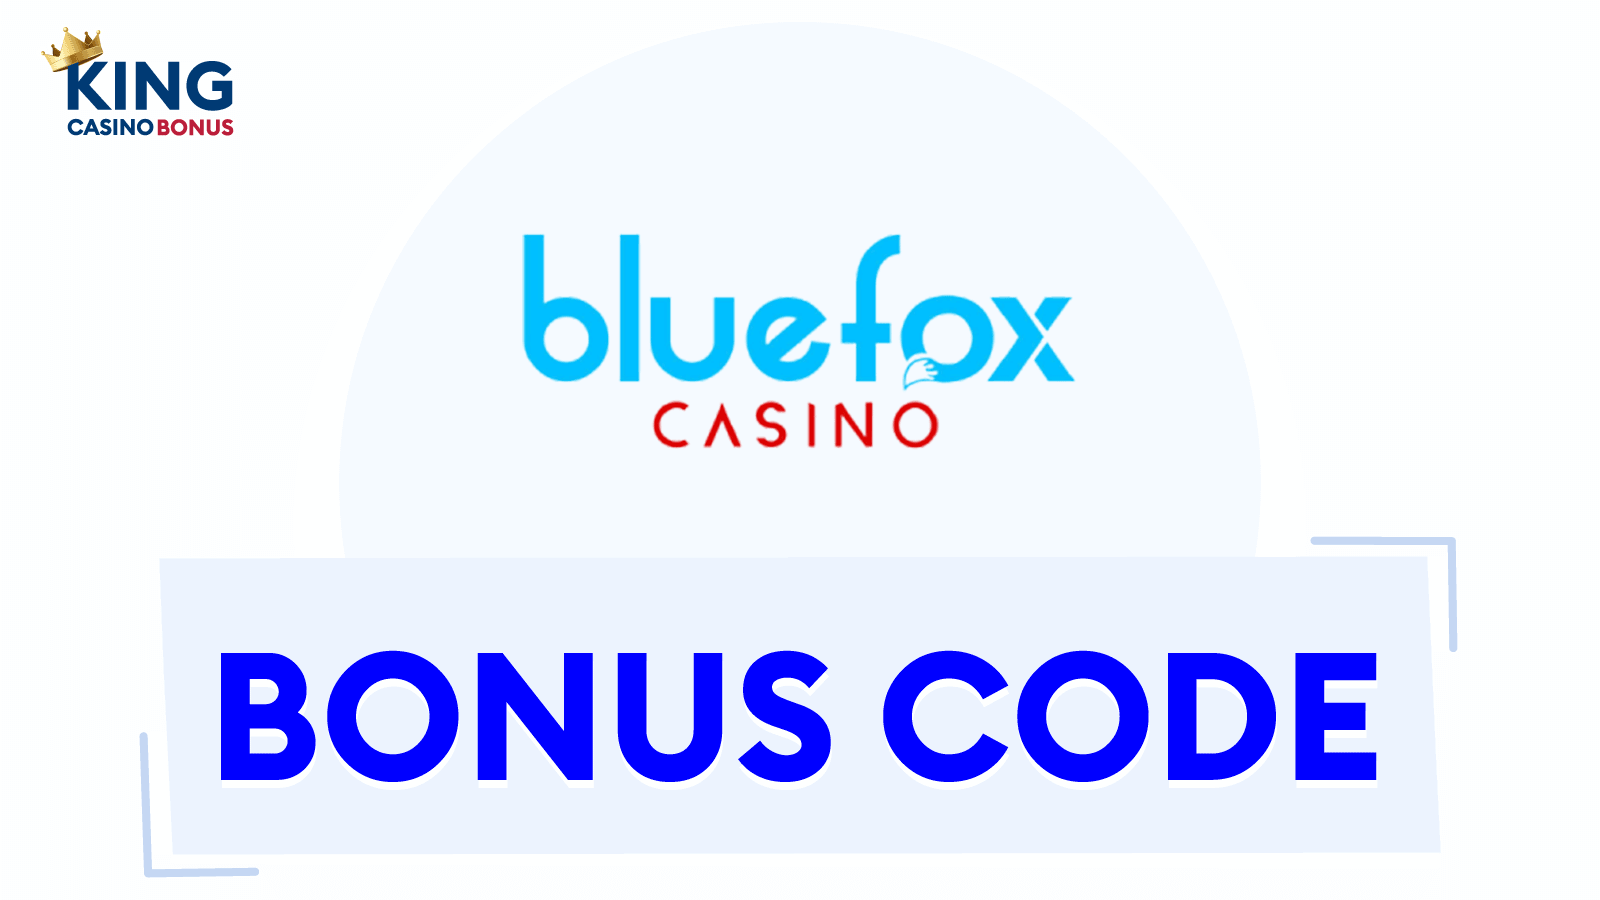 Bluefox Casino Bonus Codes